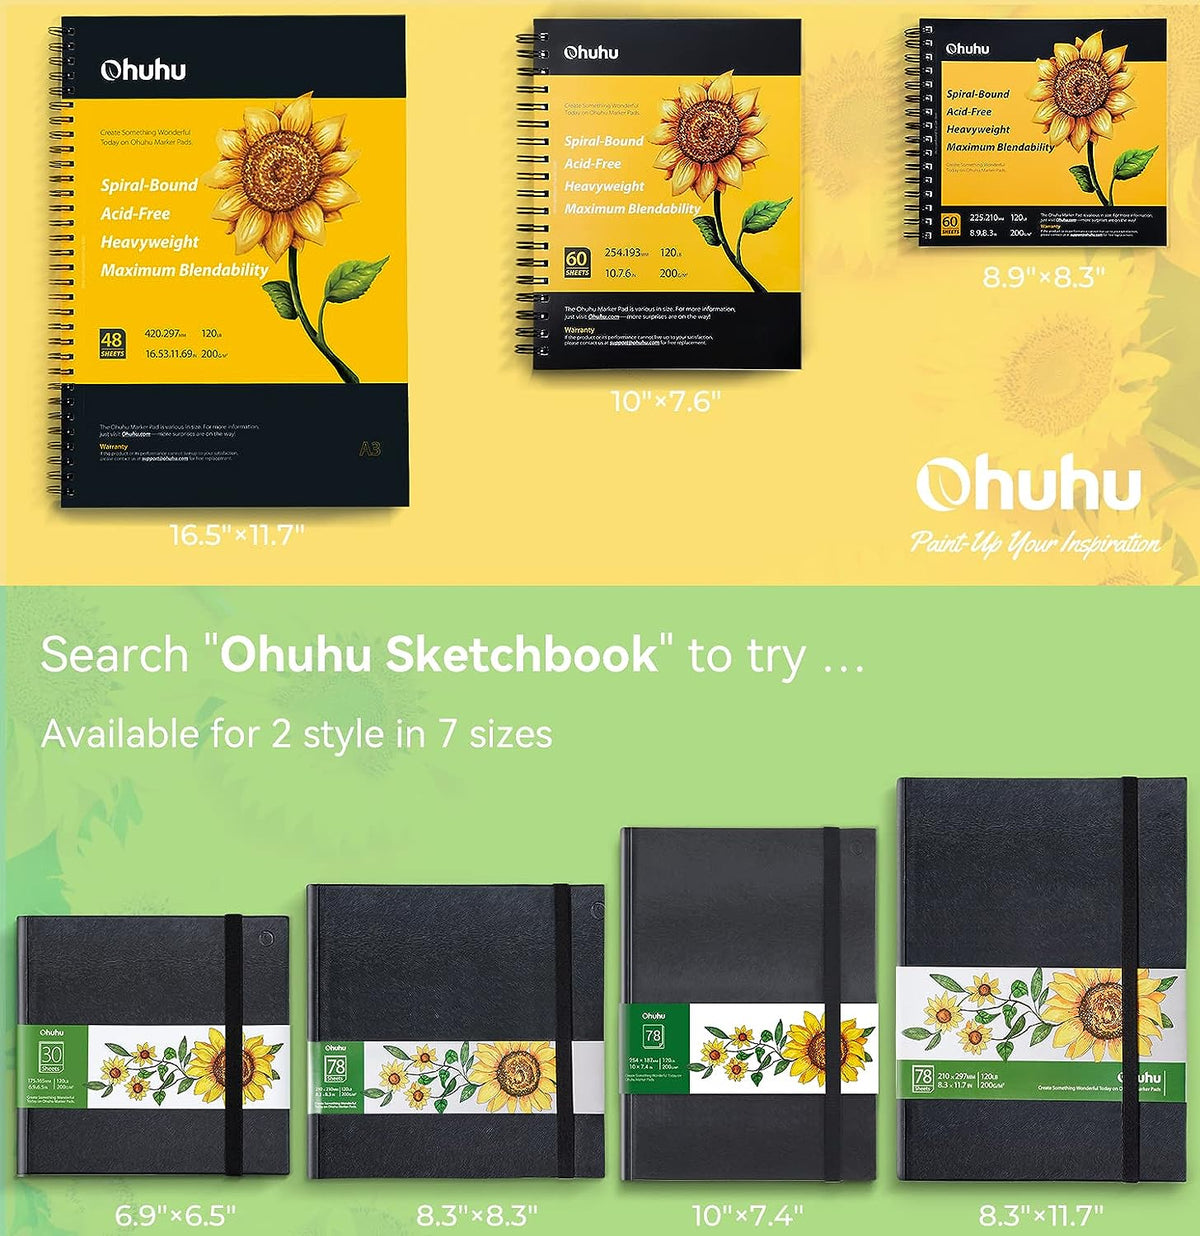 Ohuhu - Mogahwi Stationery